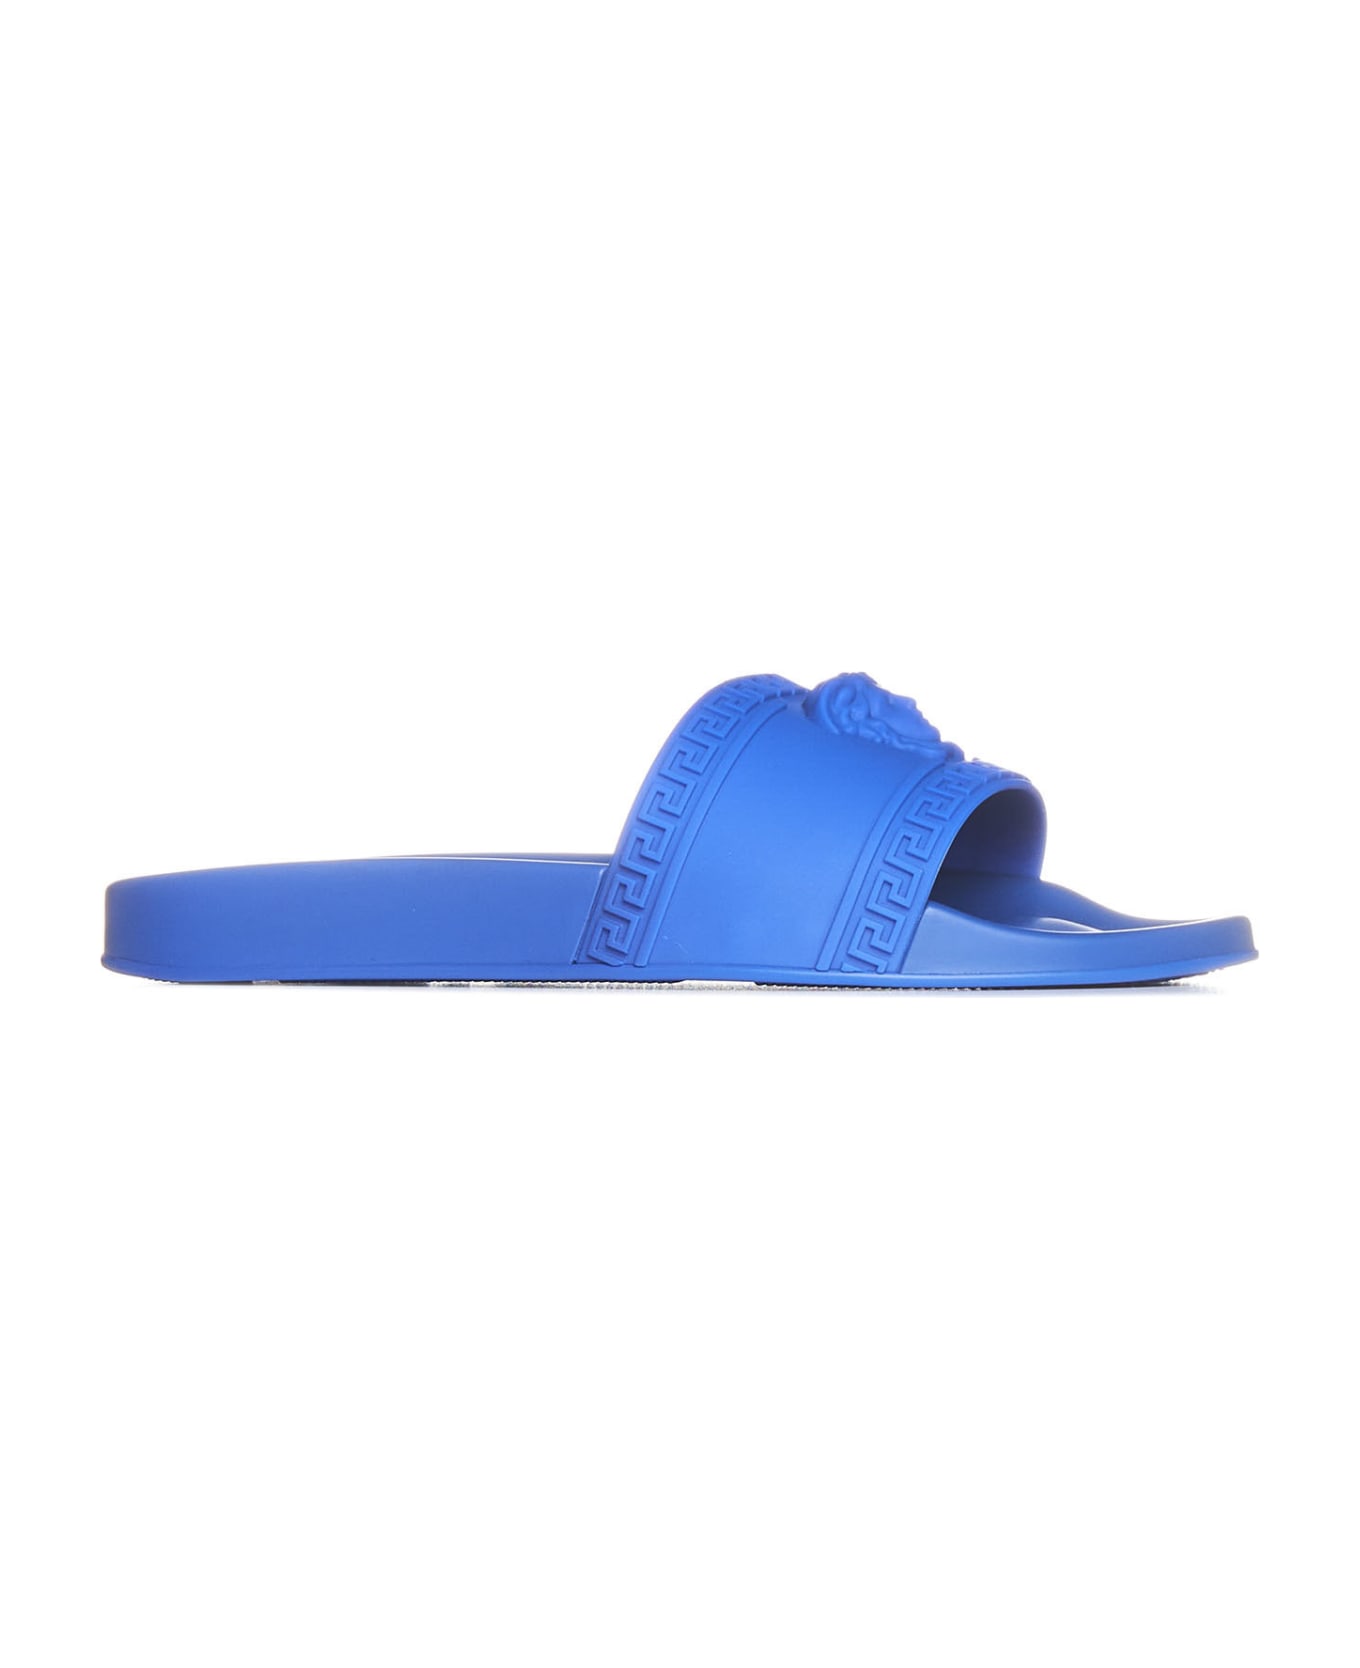 Versace Shoes - Royal blue